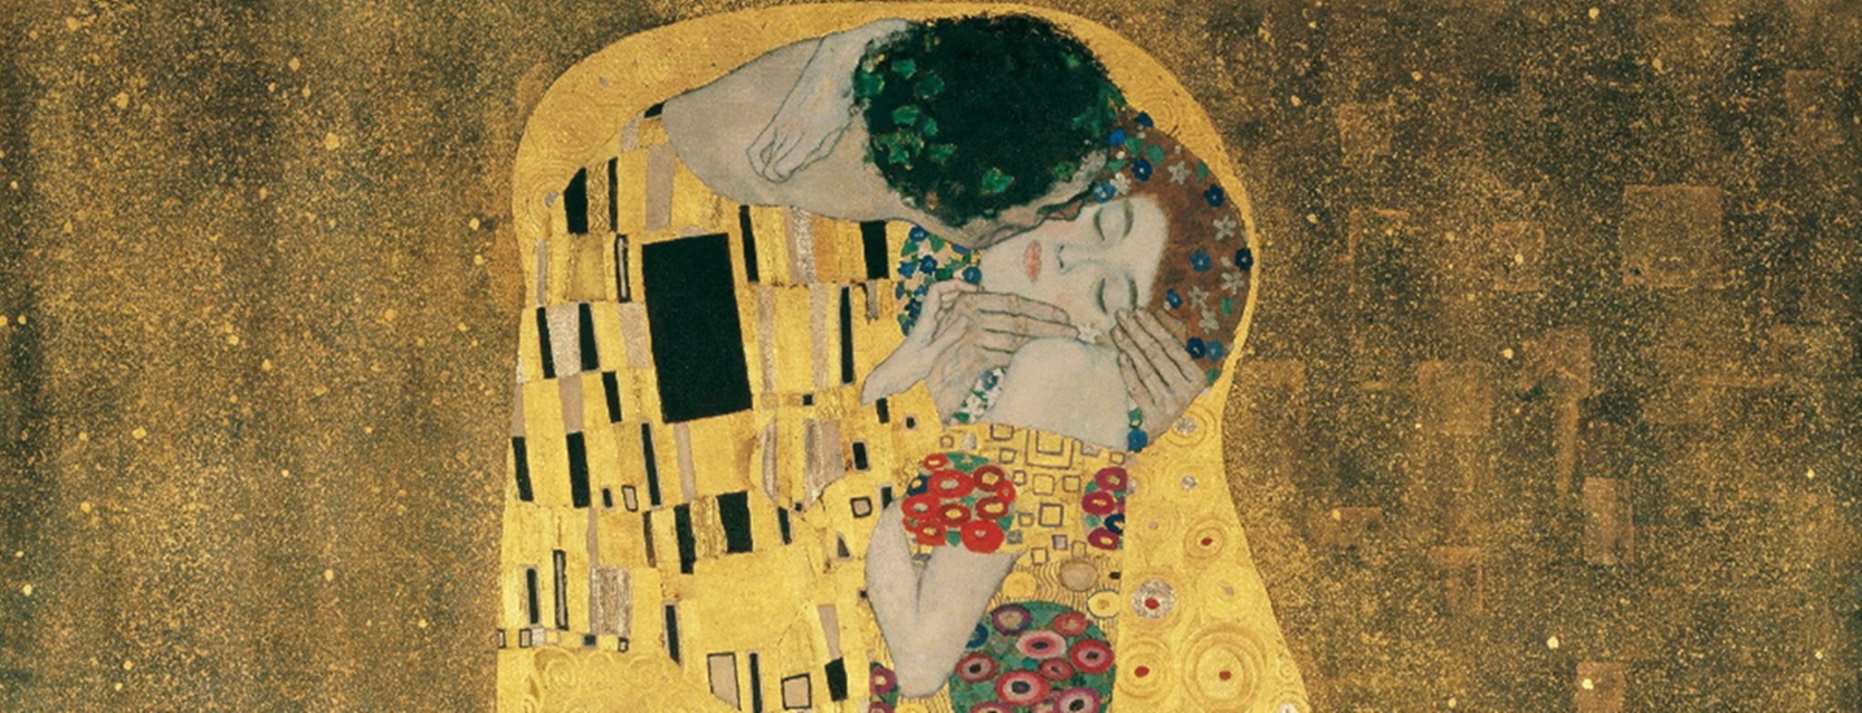 La historia detrás de “El beso”, la pintura más famosa de Klimt 